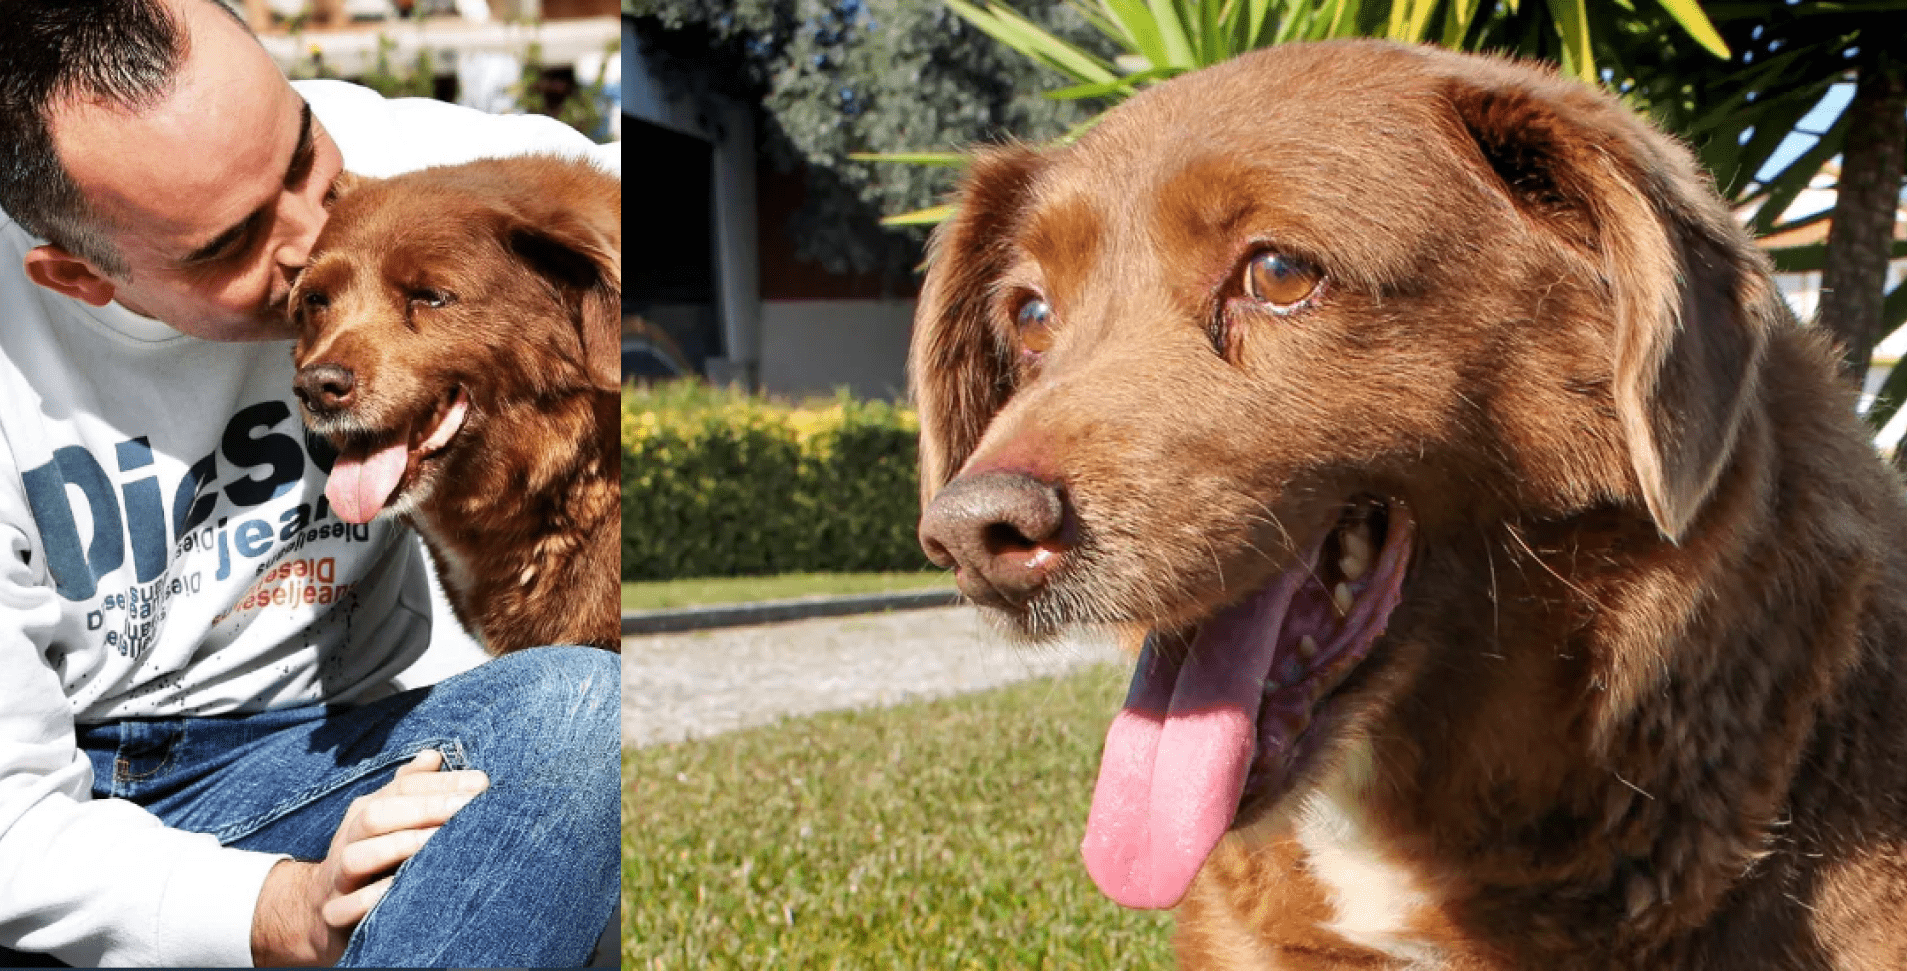 World's Oldest Dog Dethroned: Bobi's Age Investigated